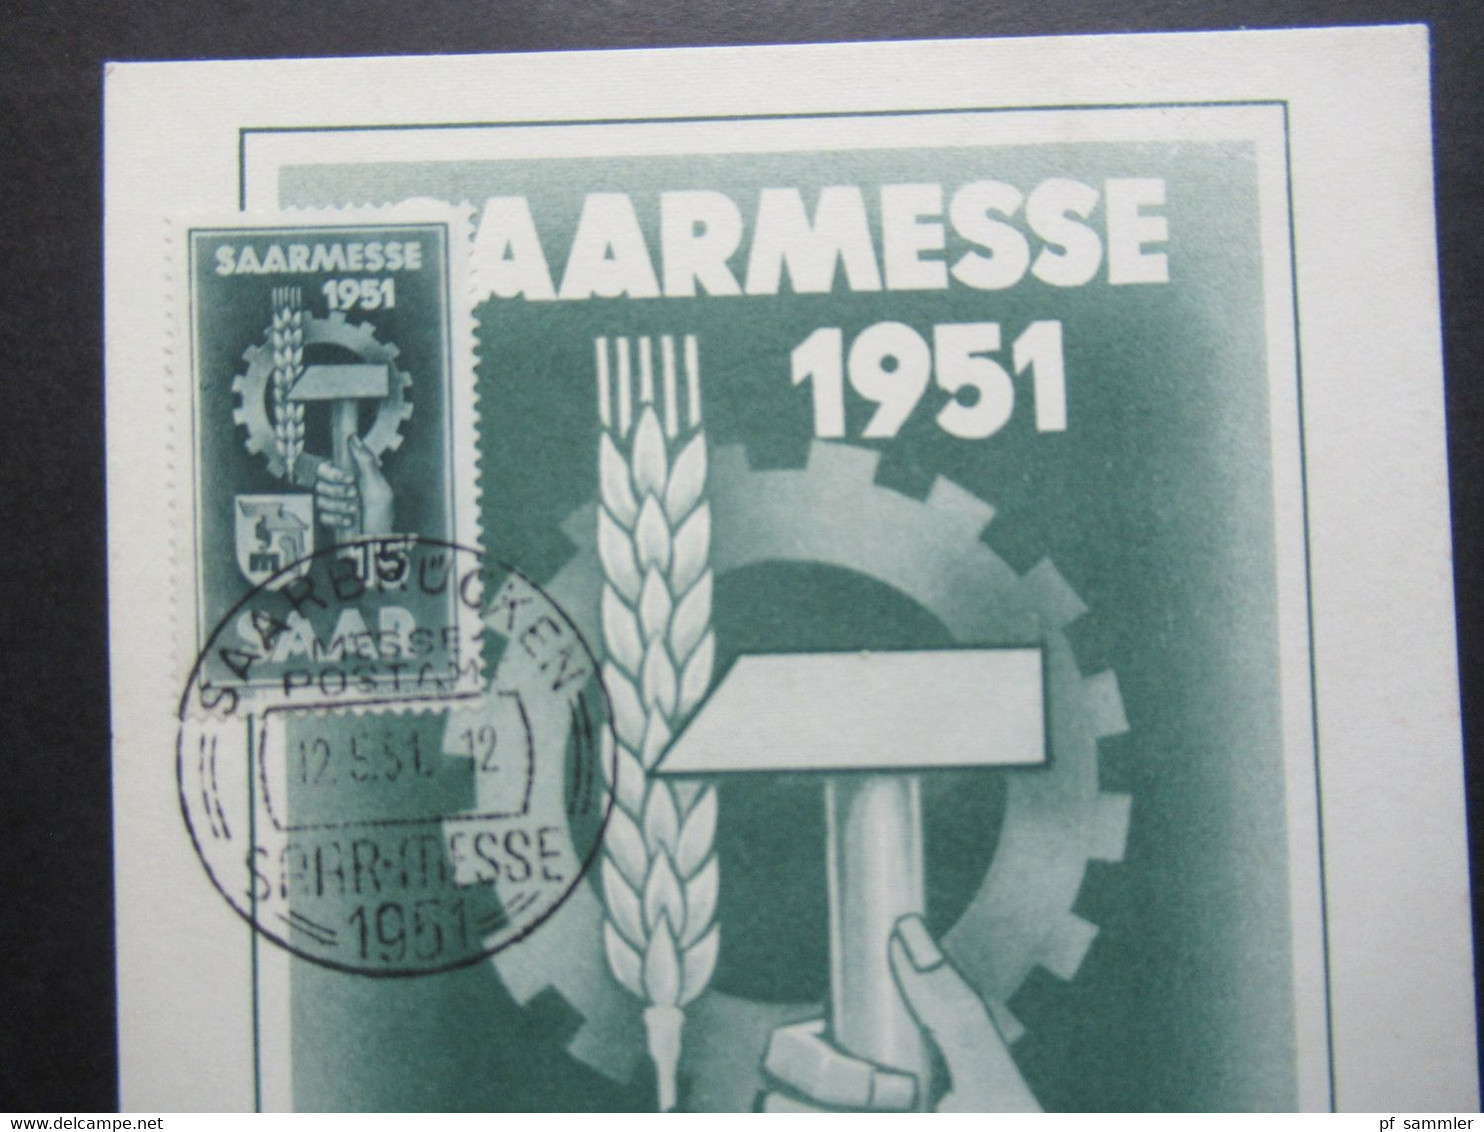 Saarland 12.5.1951 Saarmesse Sonder PK / Maximumkarte / FDC Sonderstempel Saar - Messe / Maximal Karte - Covers & Documents